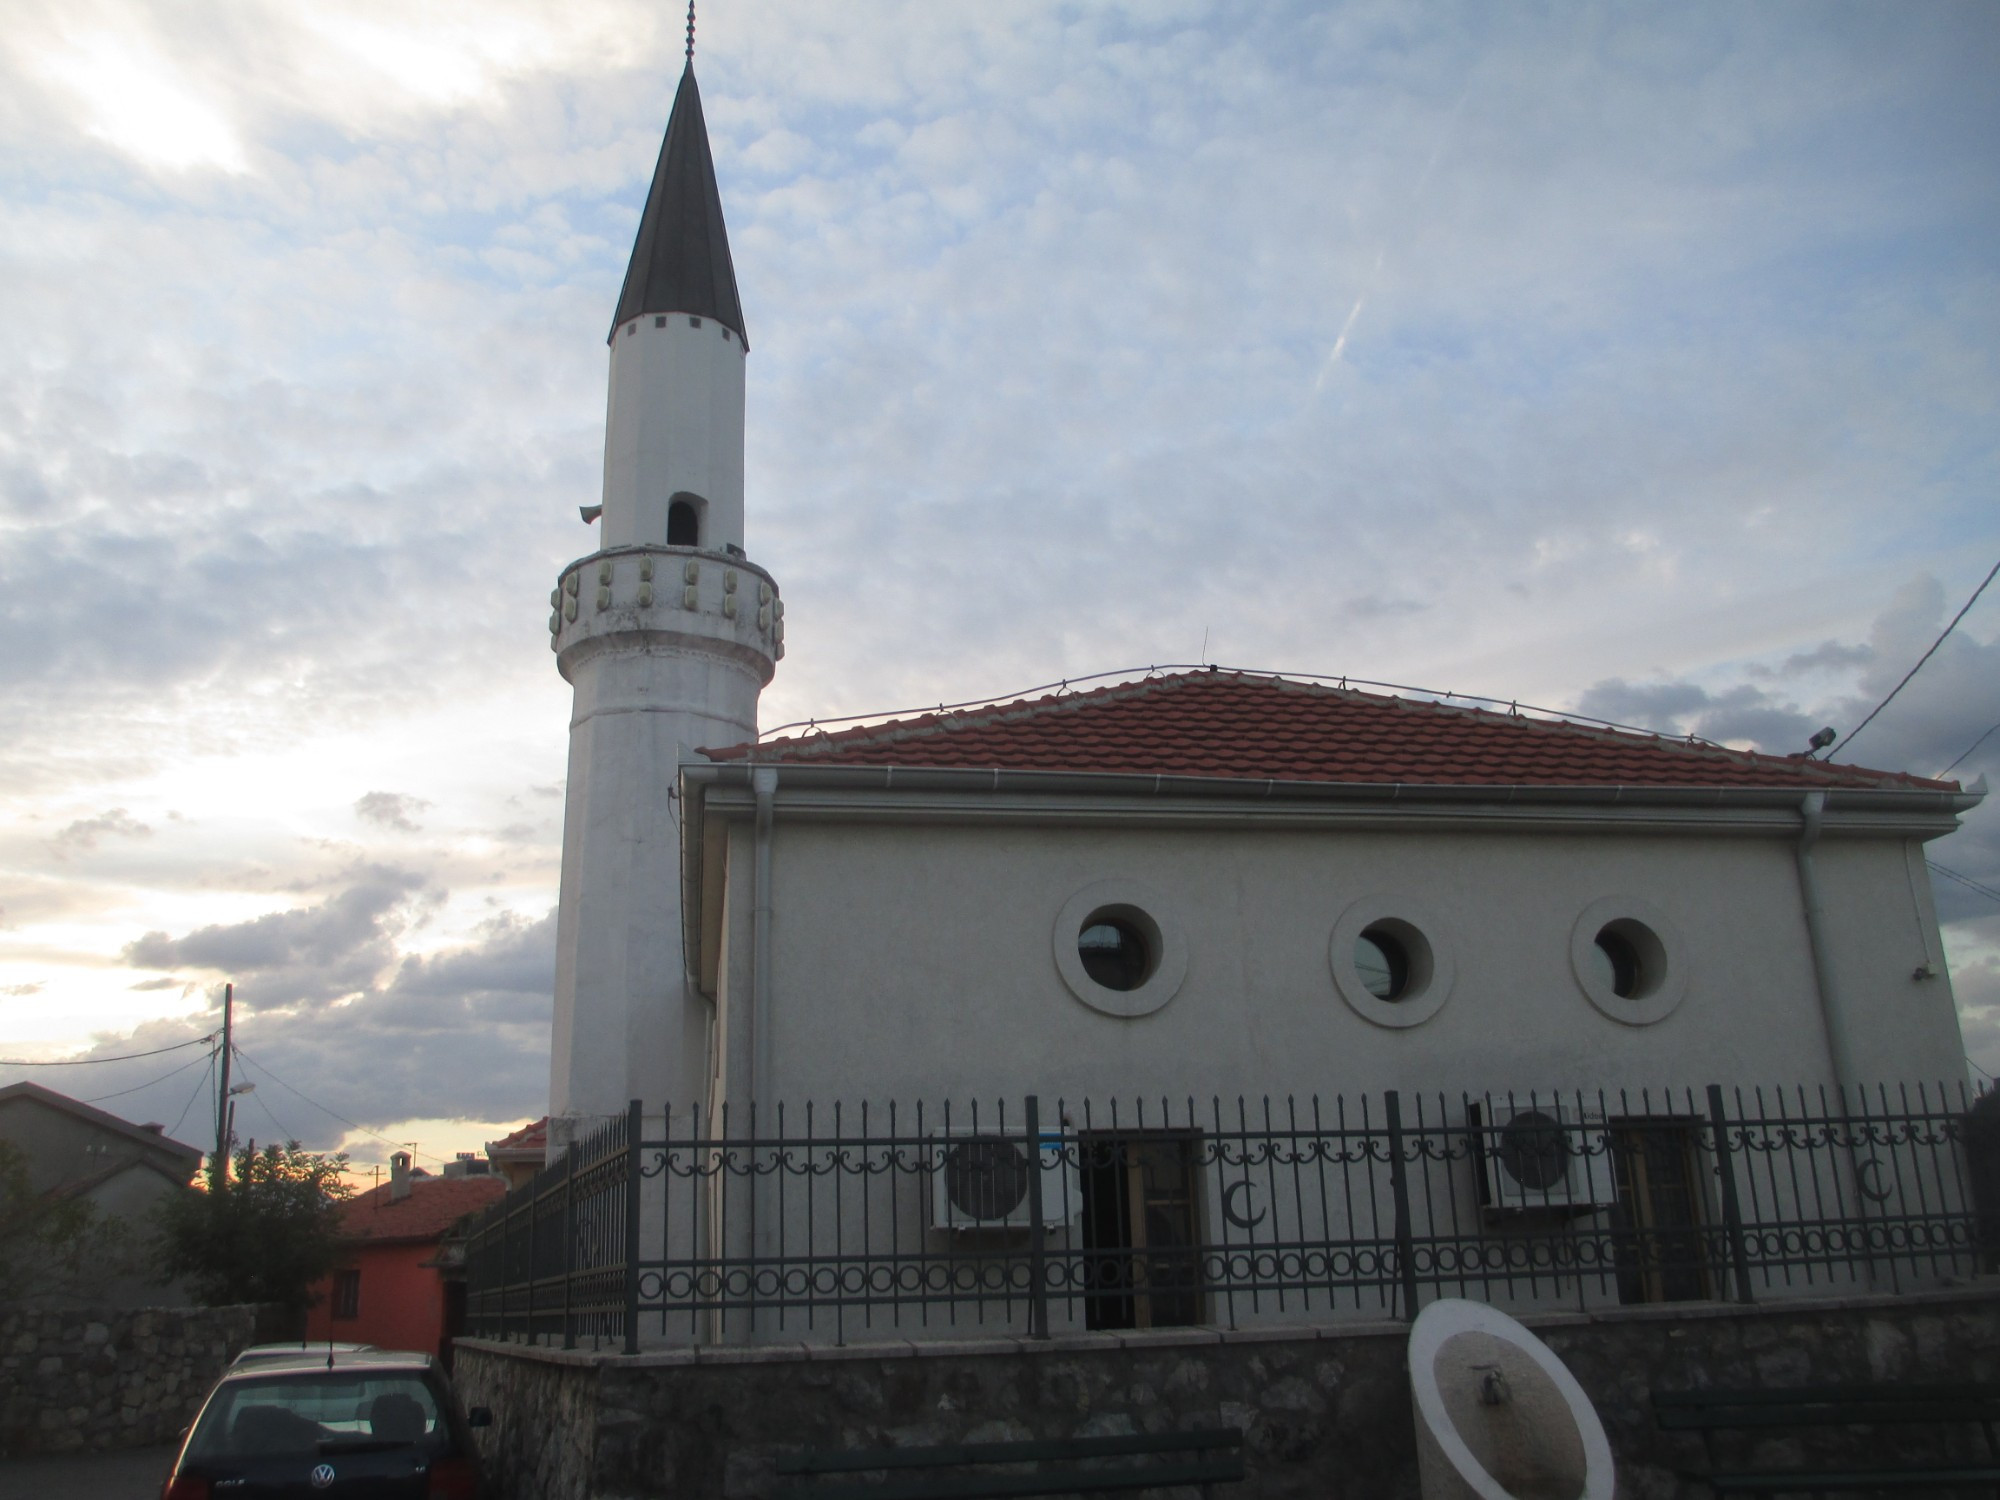 Подгорица. Стародоганьская мечеть. (06.09.2015)